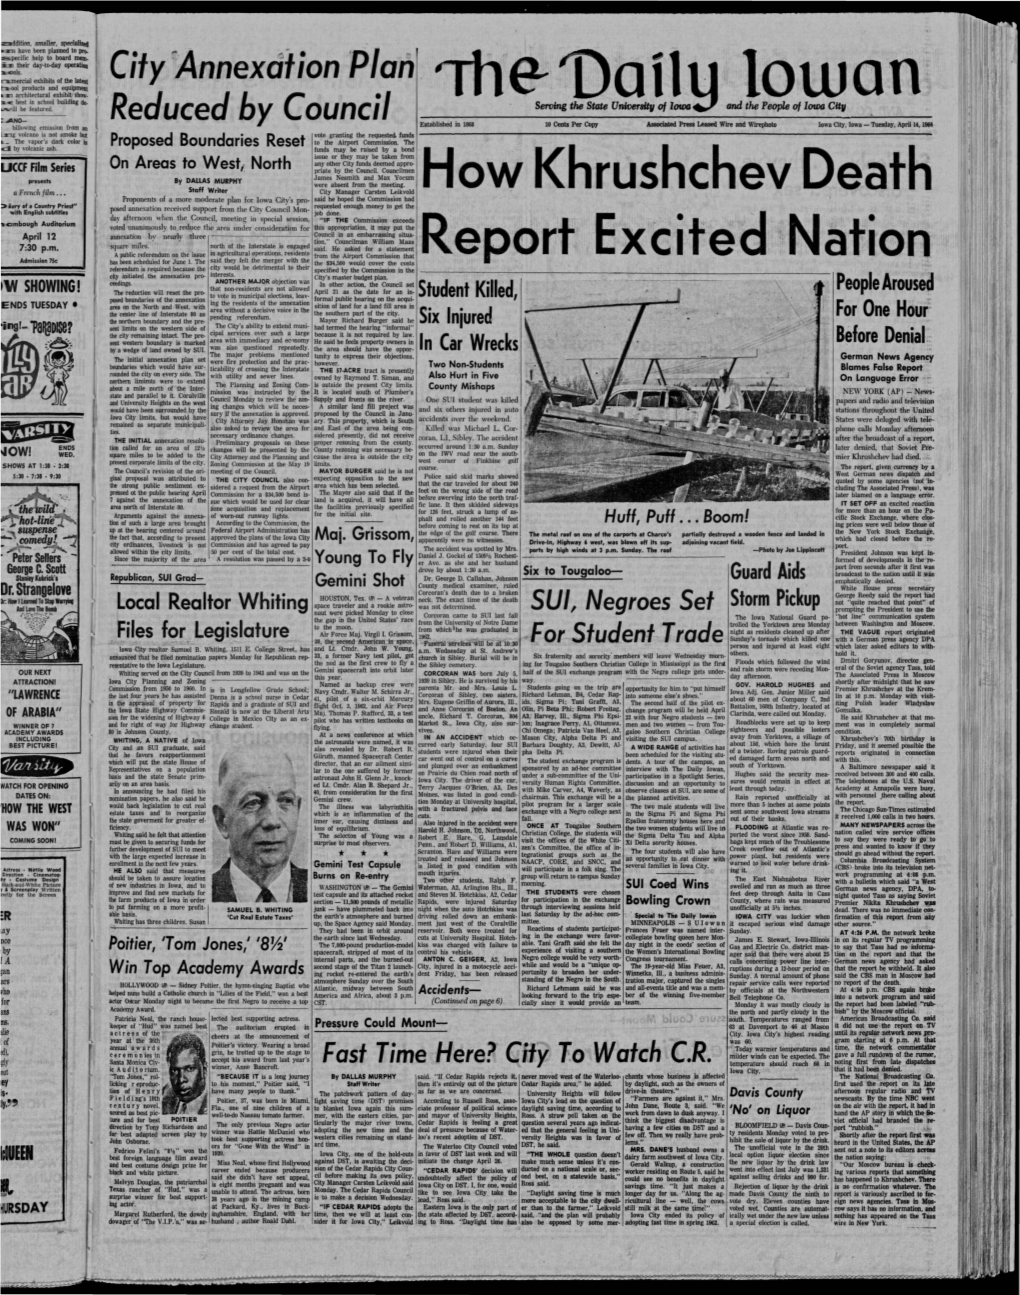 Daily Iowan (Iowa City, Iowa), 1964-04-14